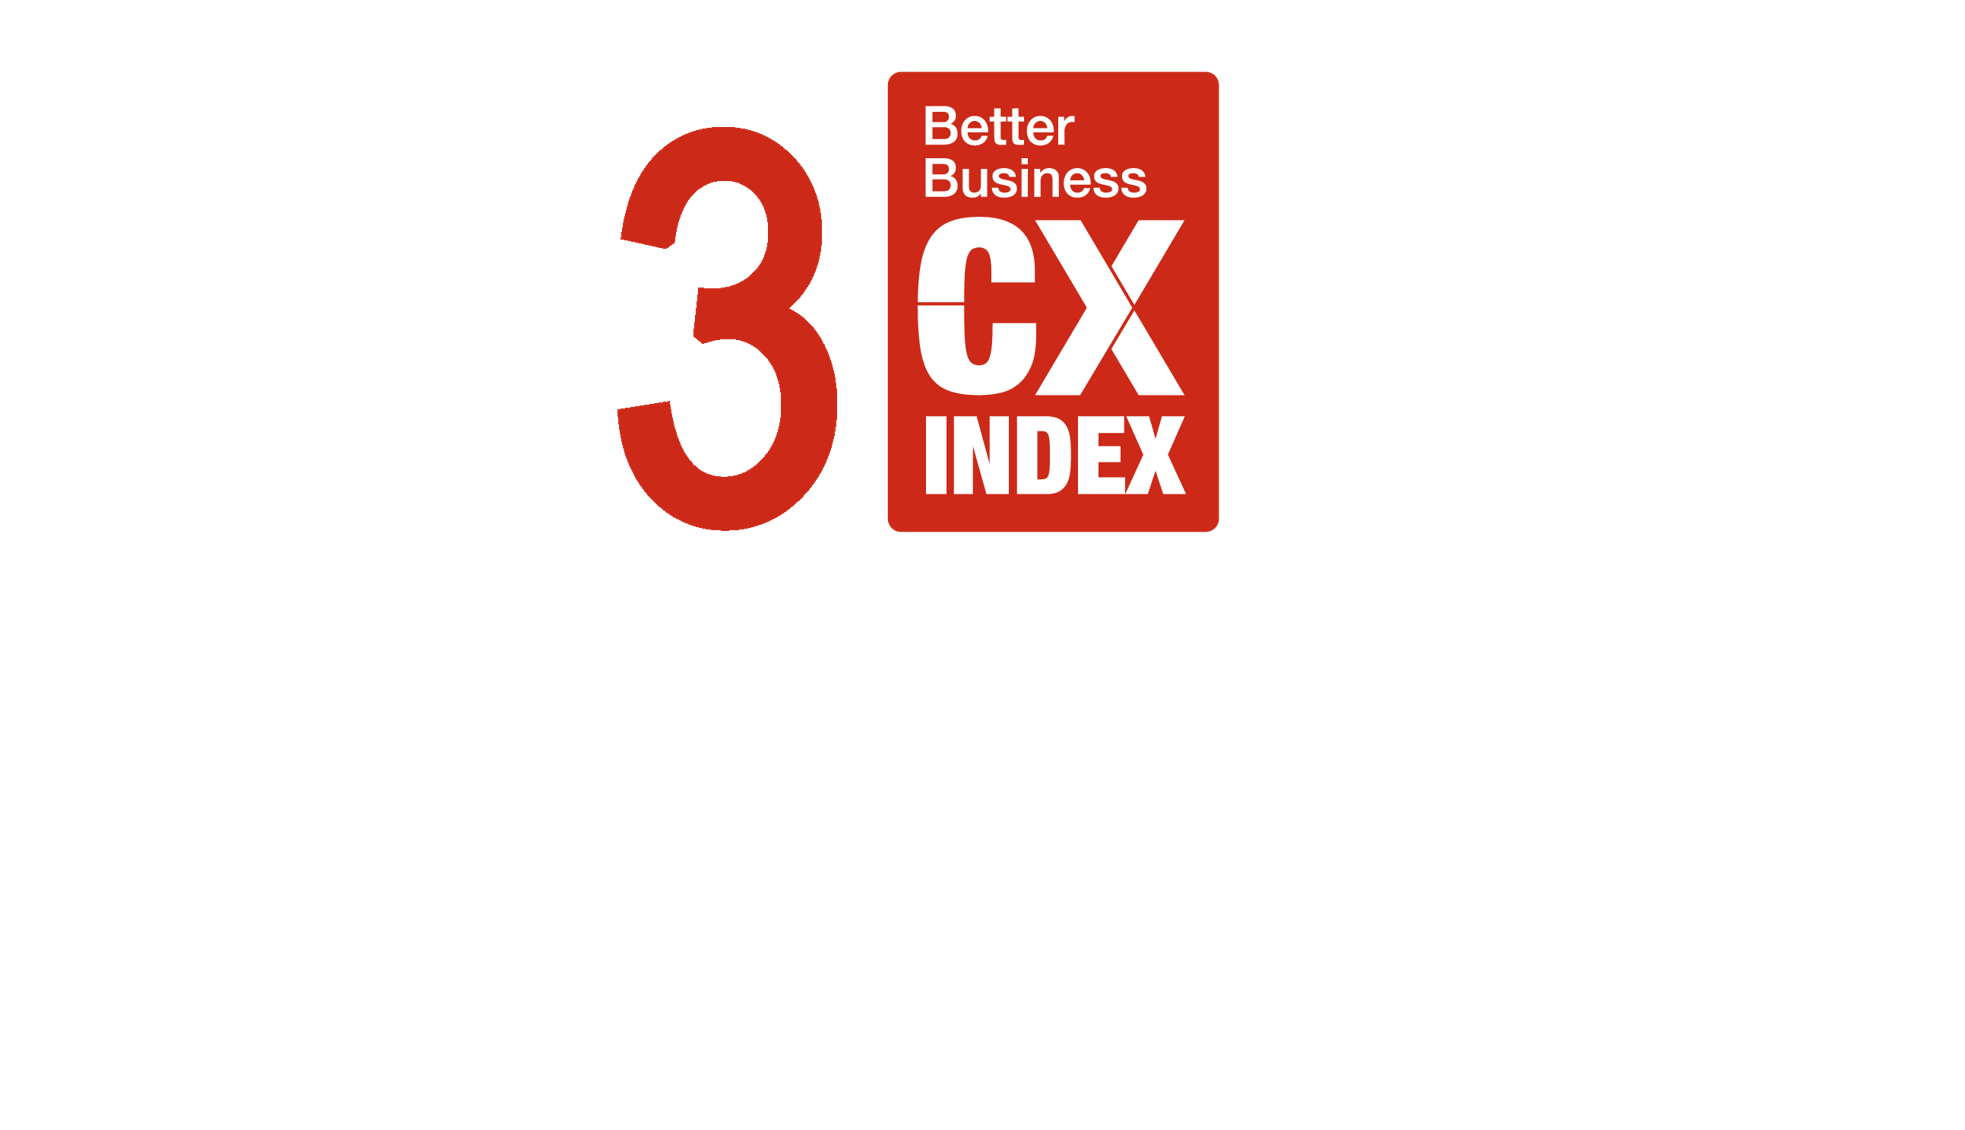 3 CX Index